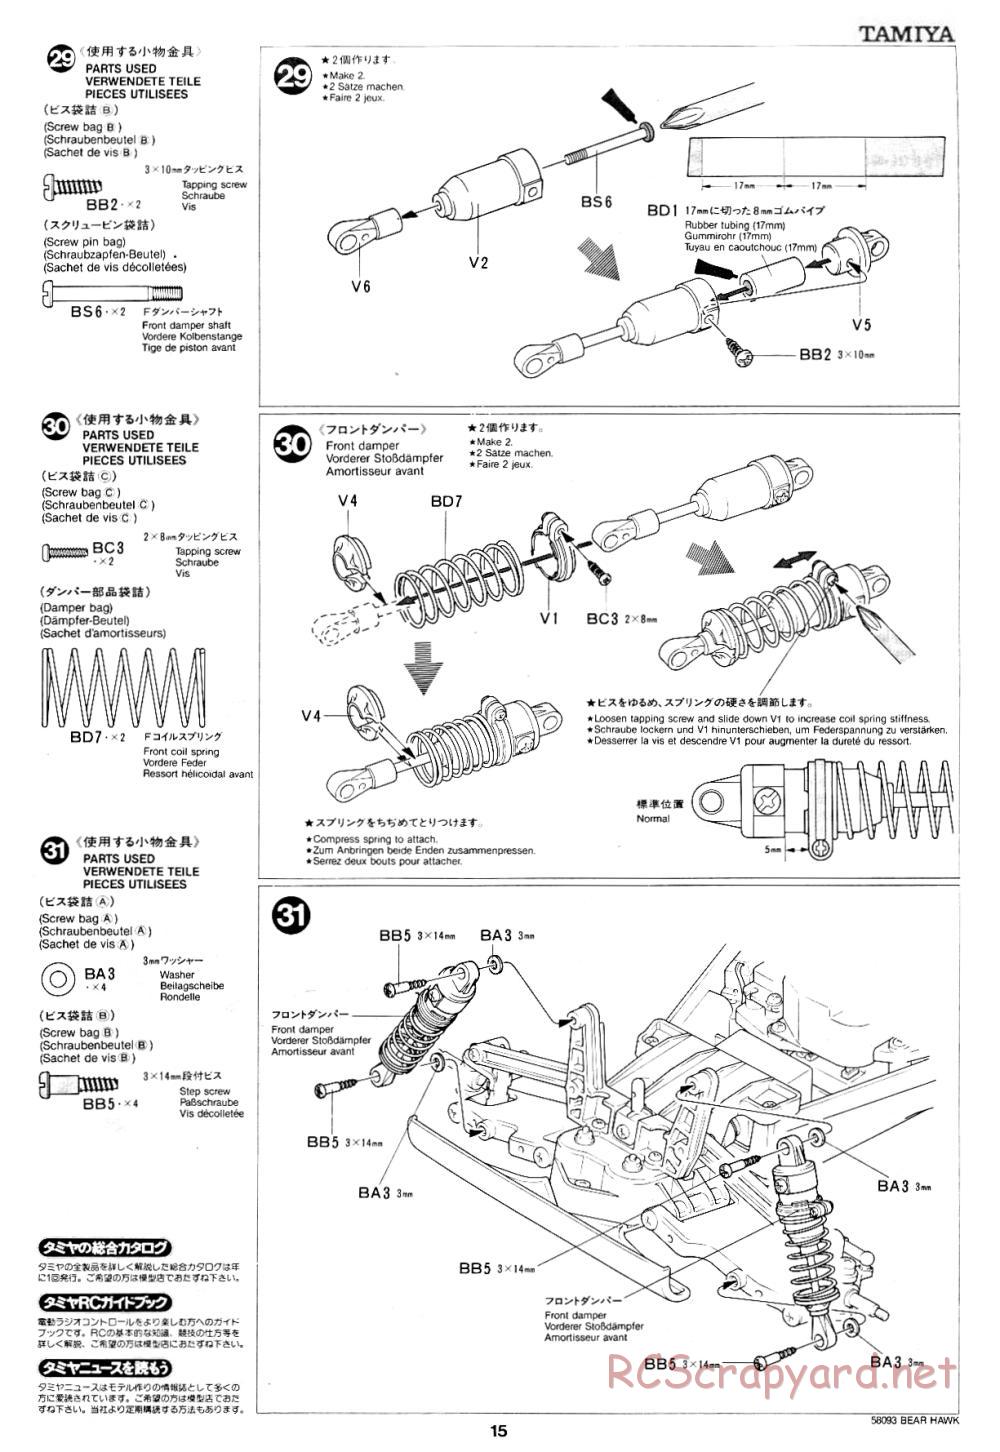 Tamiya - Bear Hawk - 58093 - Manual - Page 15